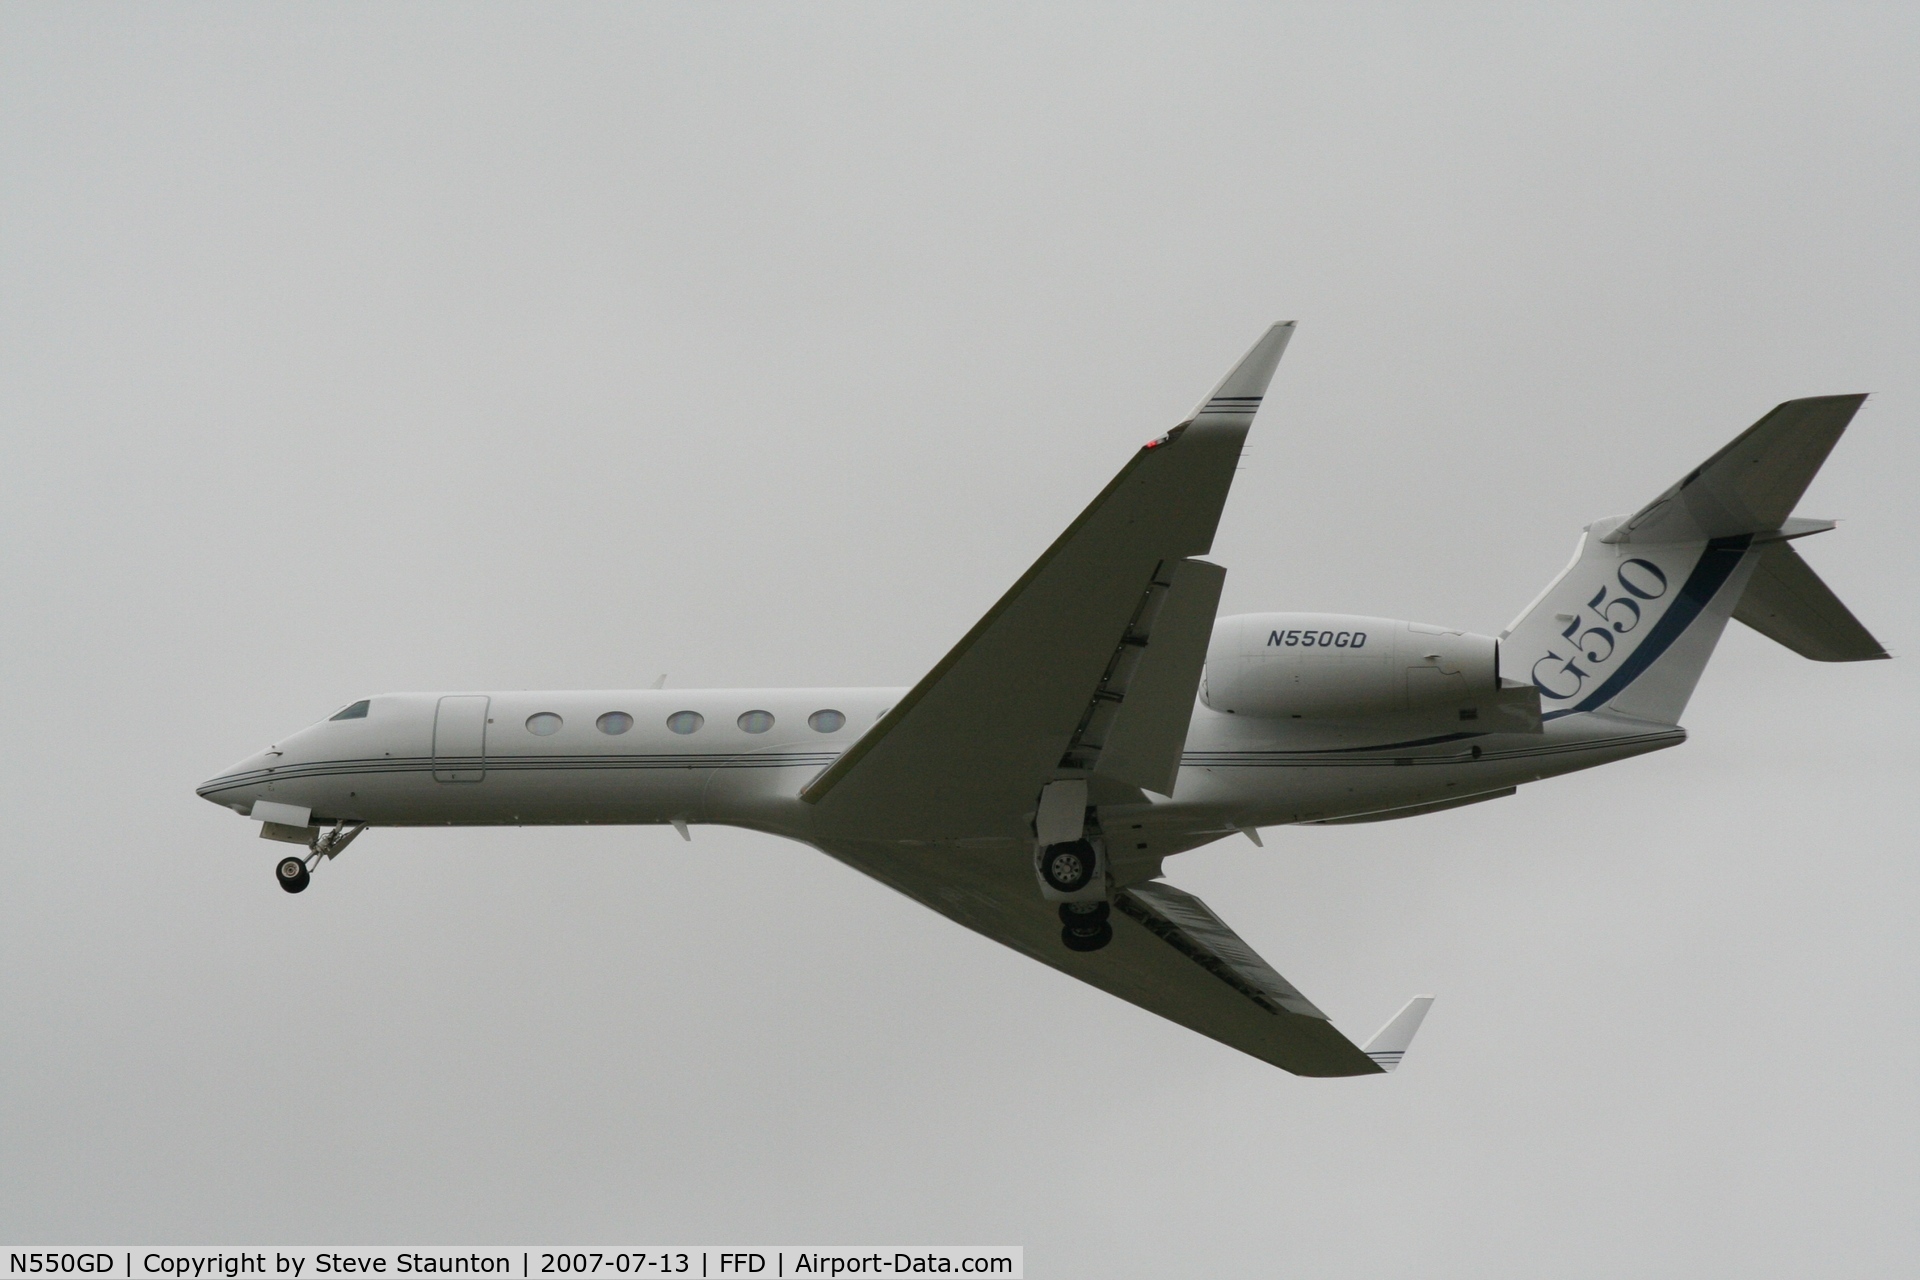 N550GD, 2008 Gulfstream Aerospace GV-SP (G550) C/N 5184, Royal International Air Tattoo 2007